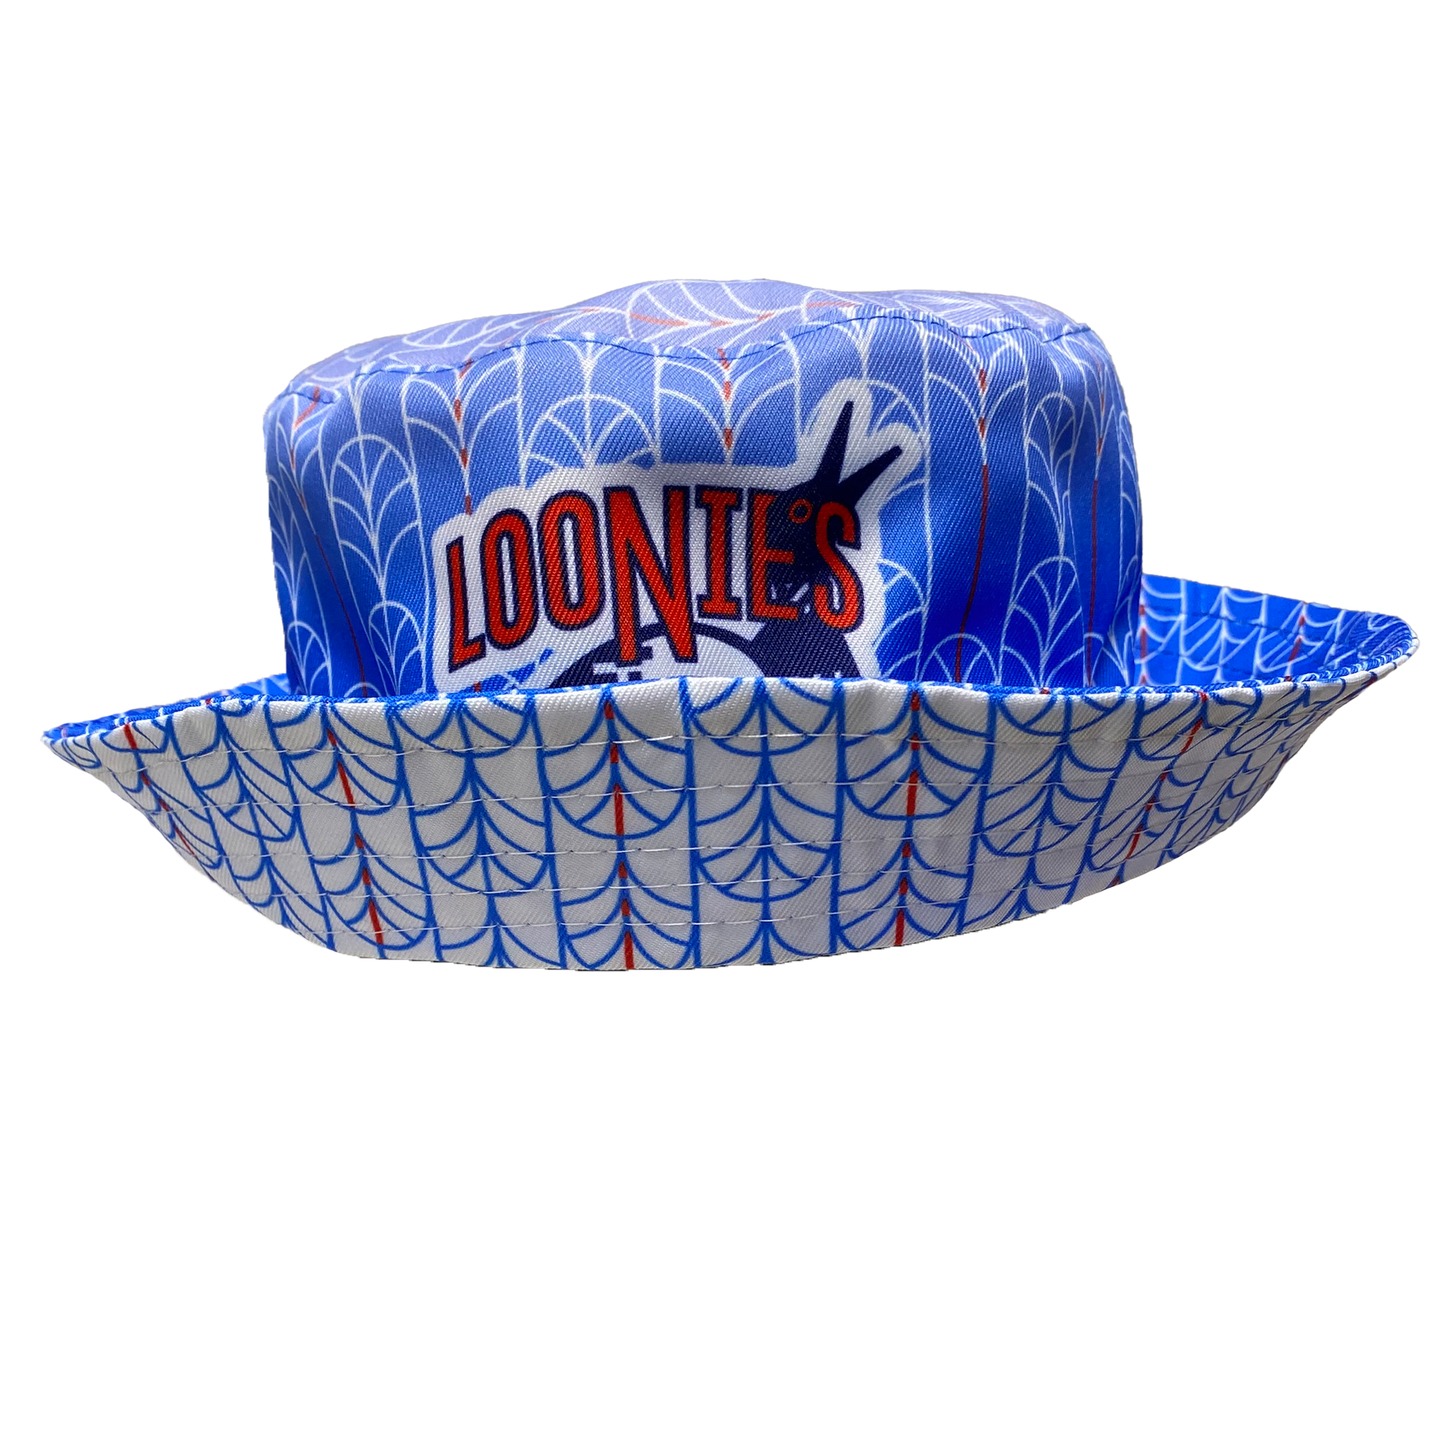 Northern Loonies '23 Reversible Bucket Hat